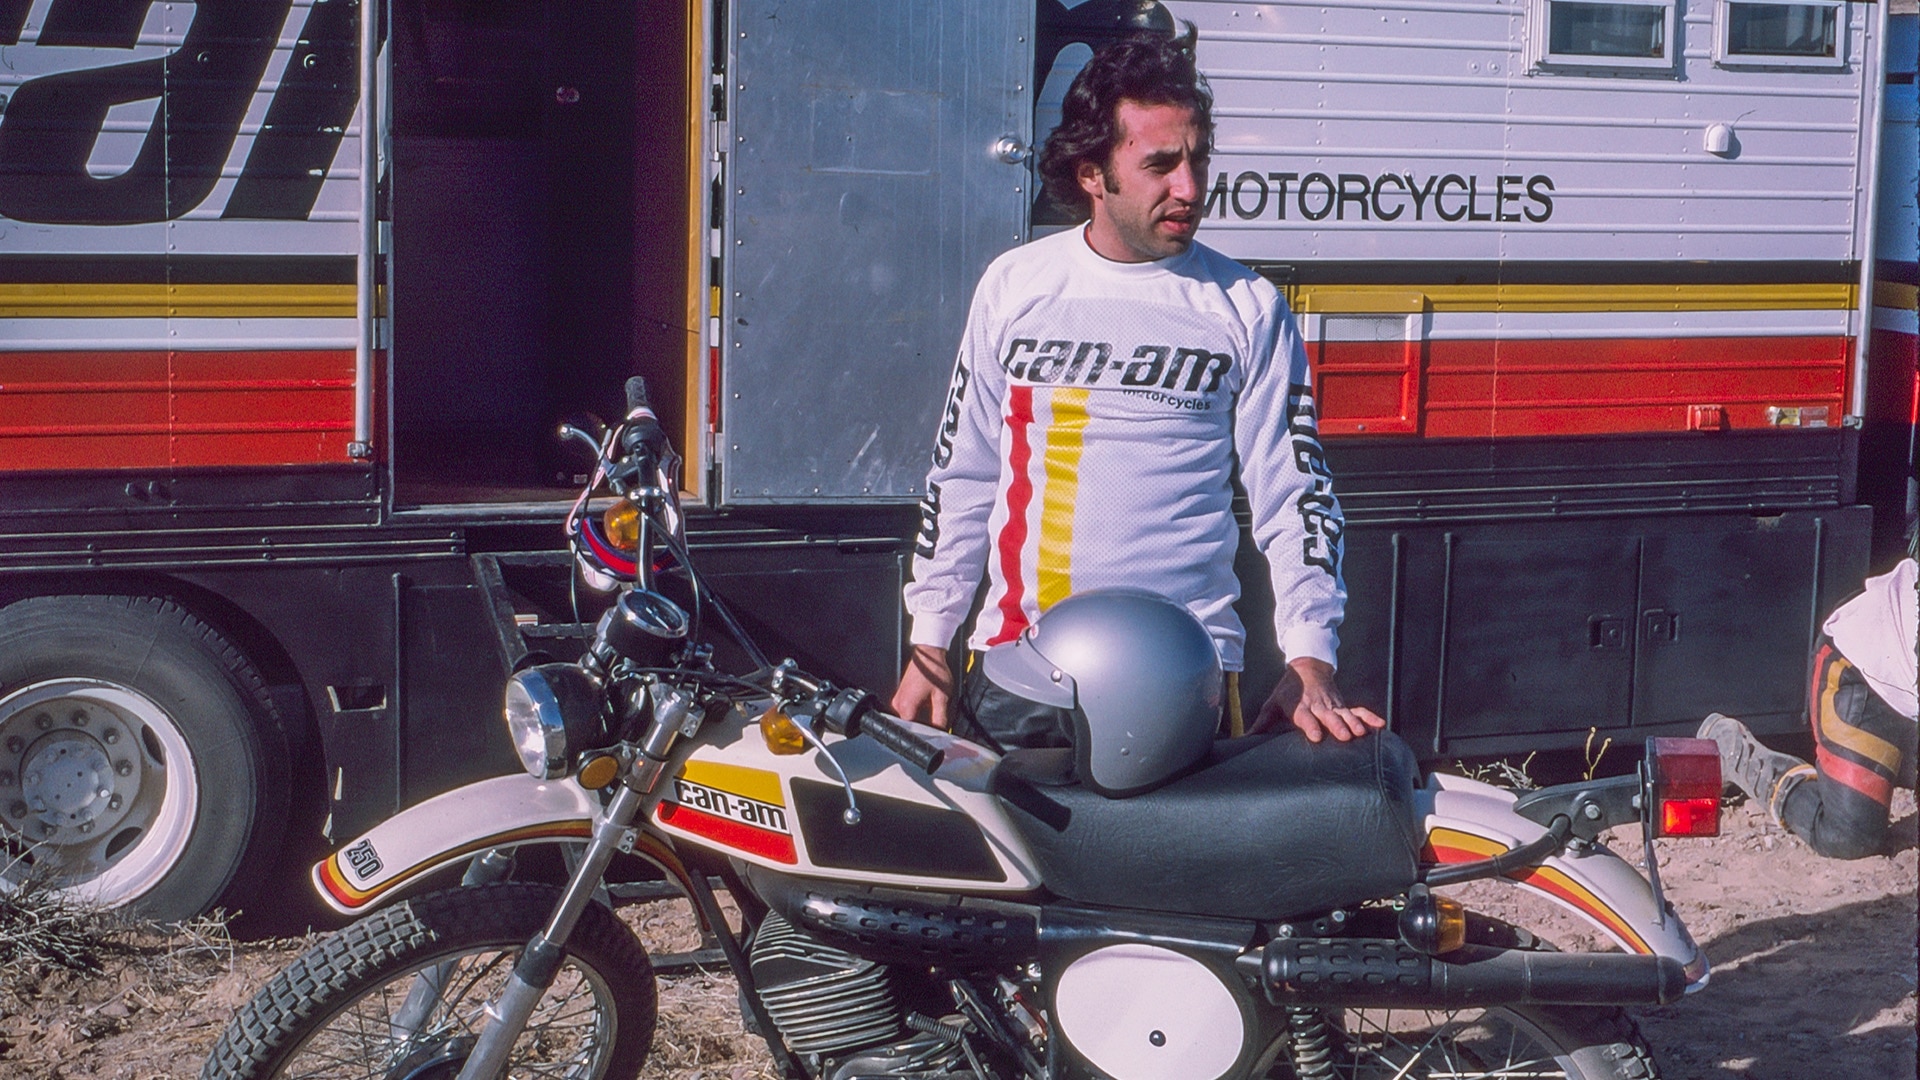 Piloto com a primeira motocicleta Can-Am: A MX.